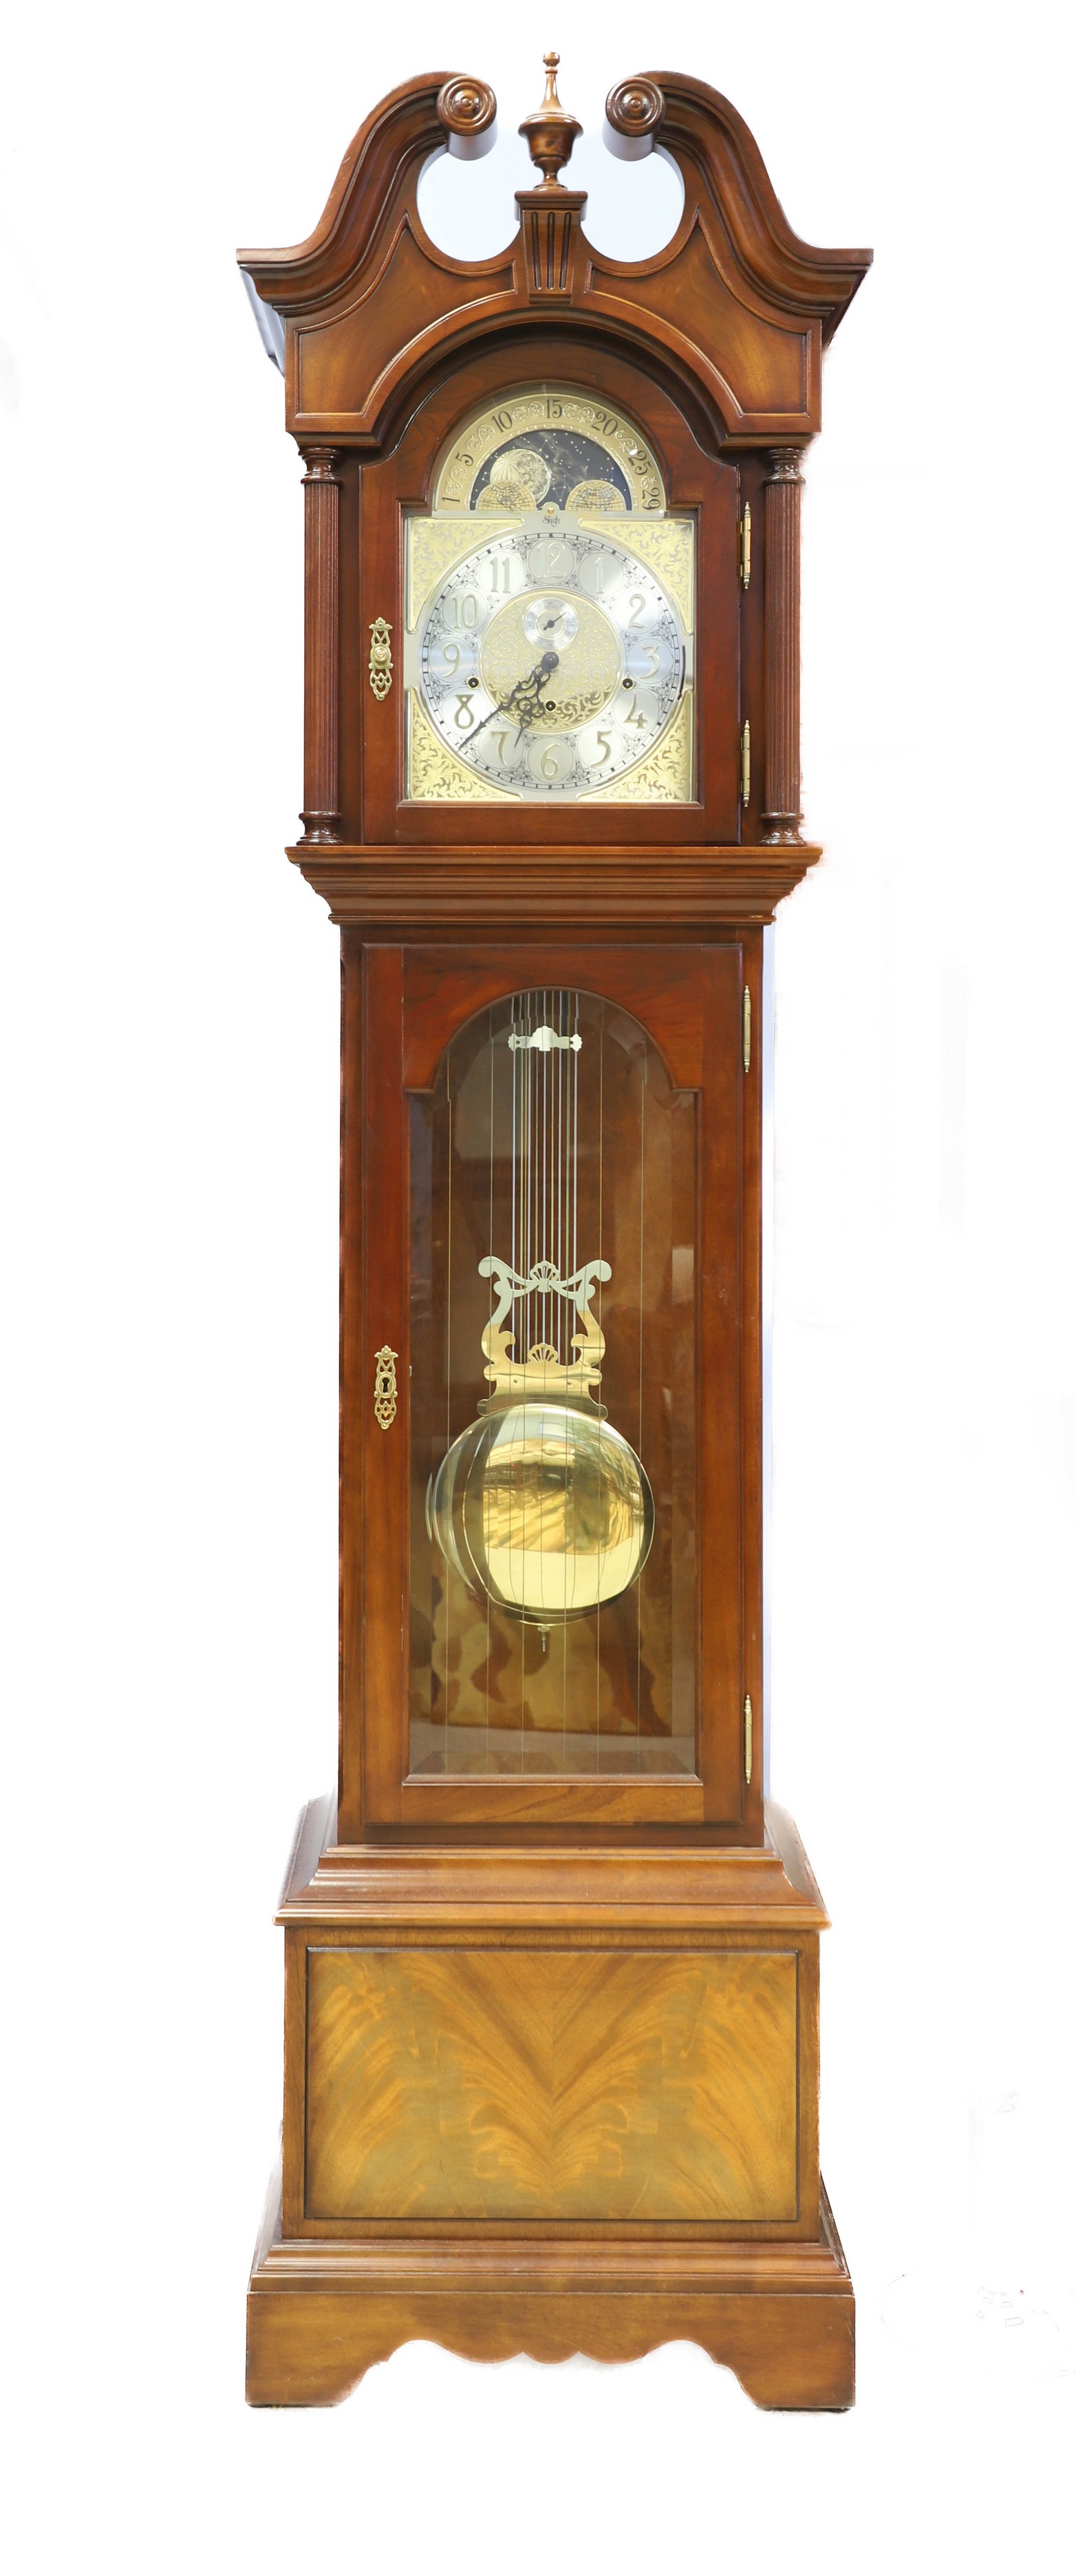 Mahogany Sligh Chiming Hall Clock  2e05a8